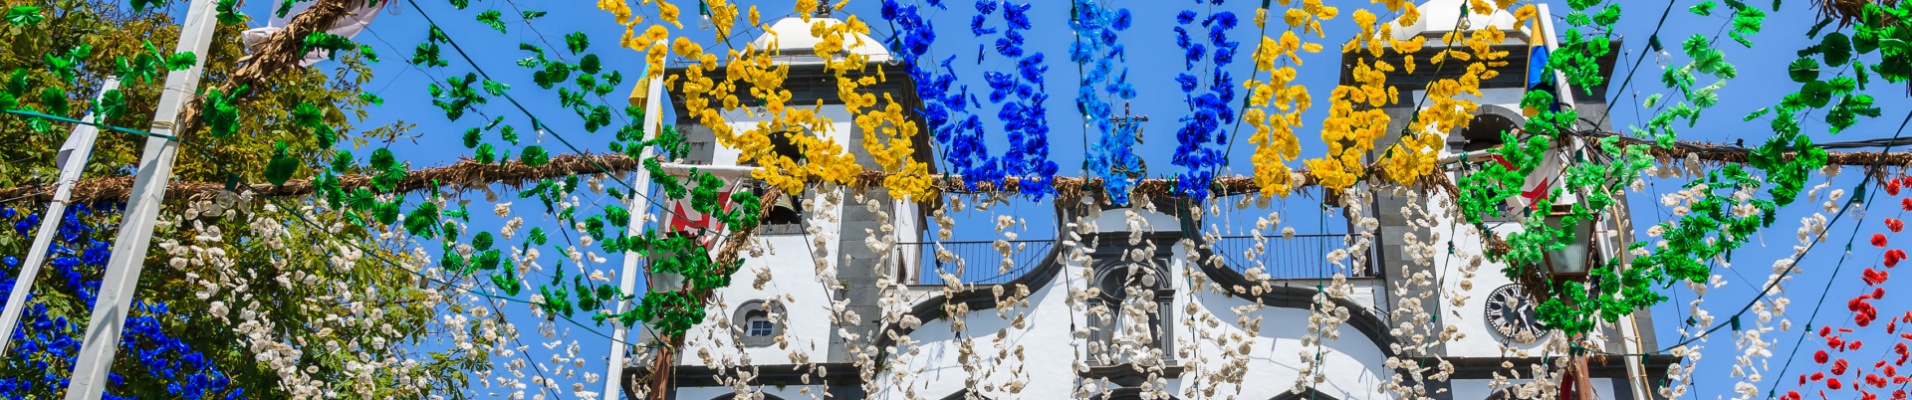 Fête des fleurs de Funchal